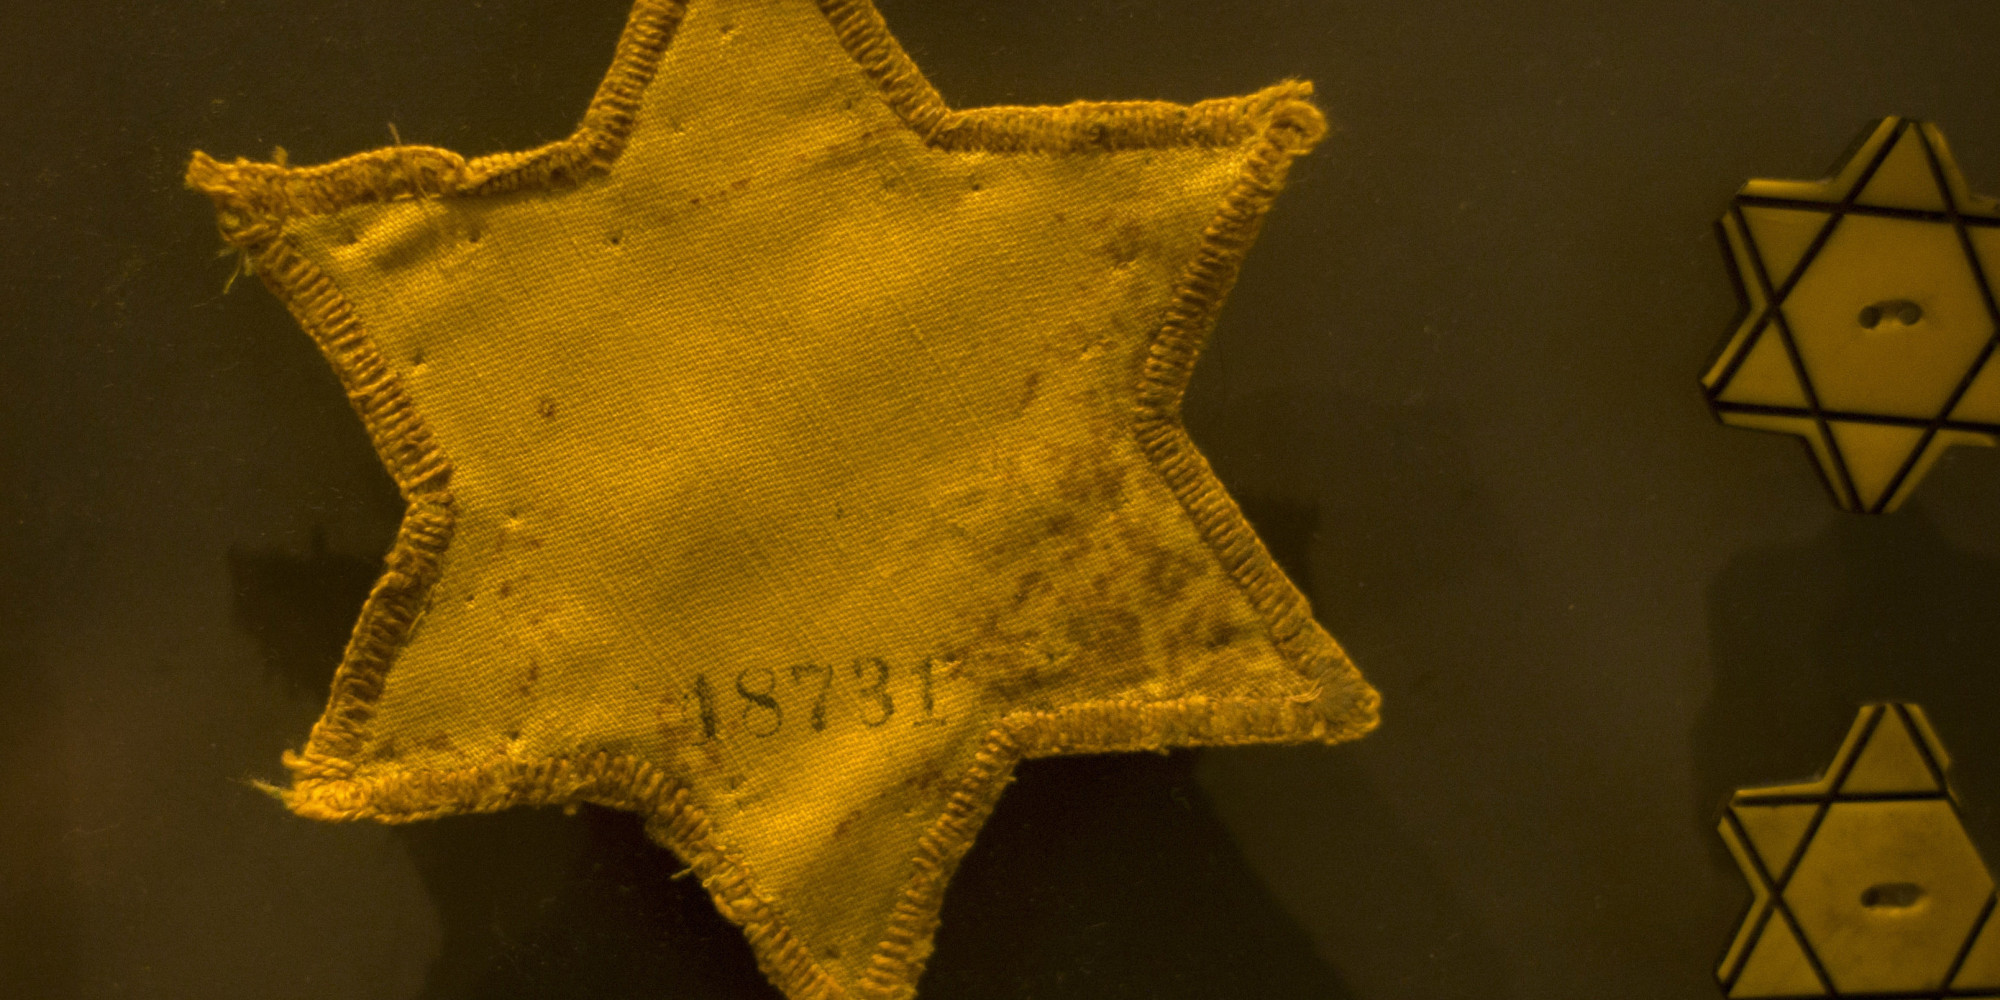 Звезда давида на одежде во время войны